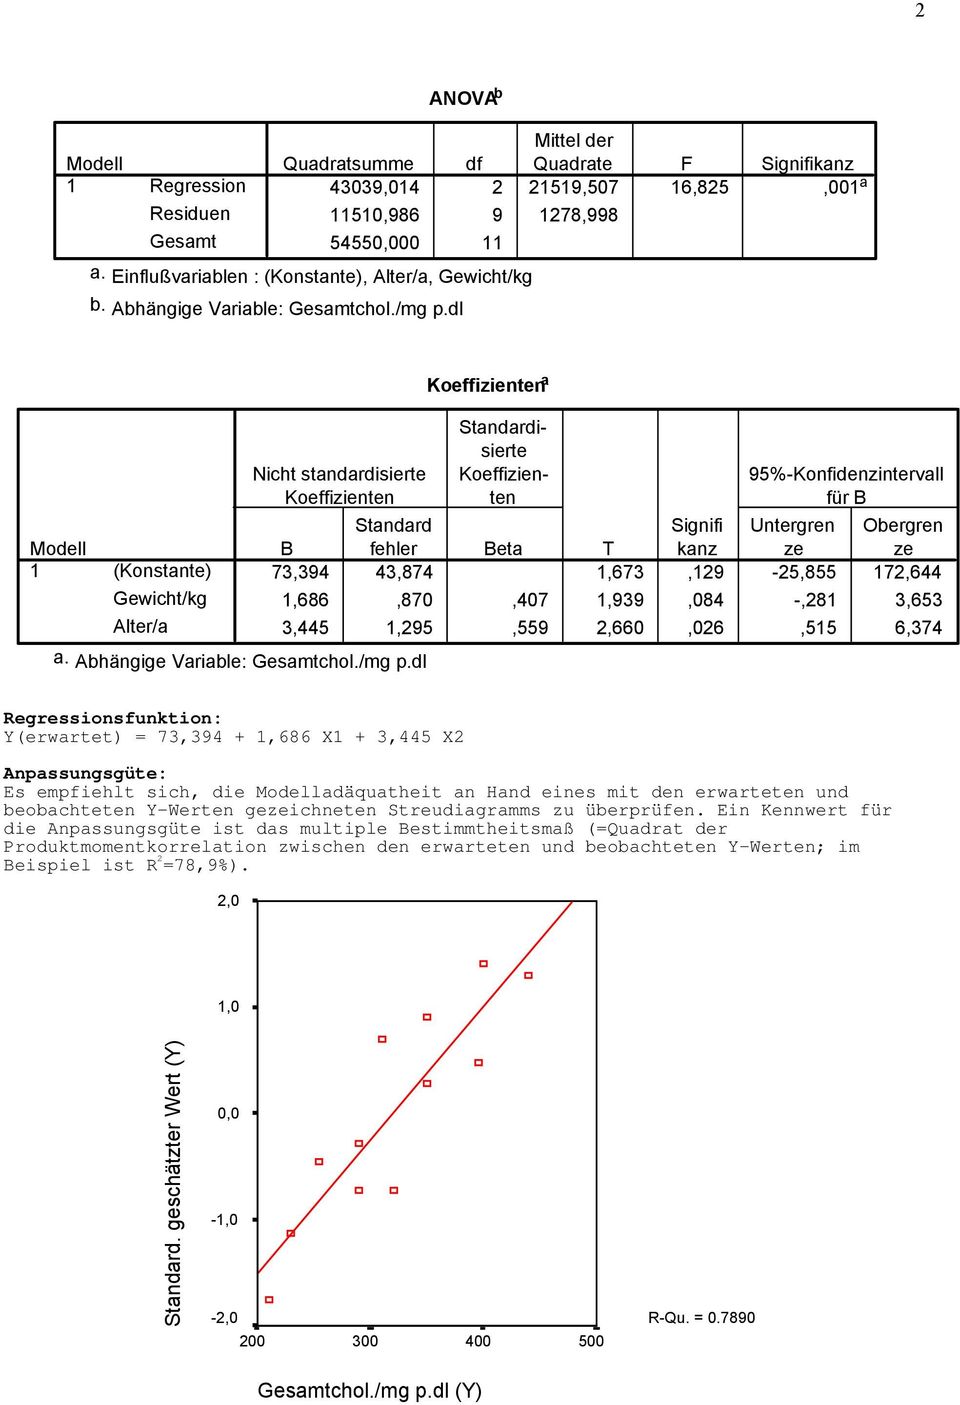 dl (Konstante) Gewicht/kg Alter/a Nicht standardisierte Koeffizienten a. Abhängige Variable: chol.